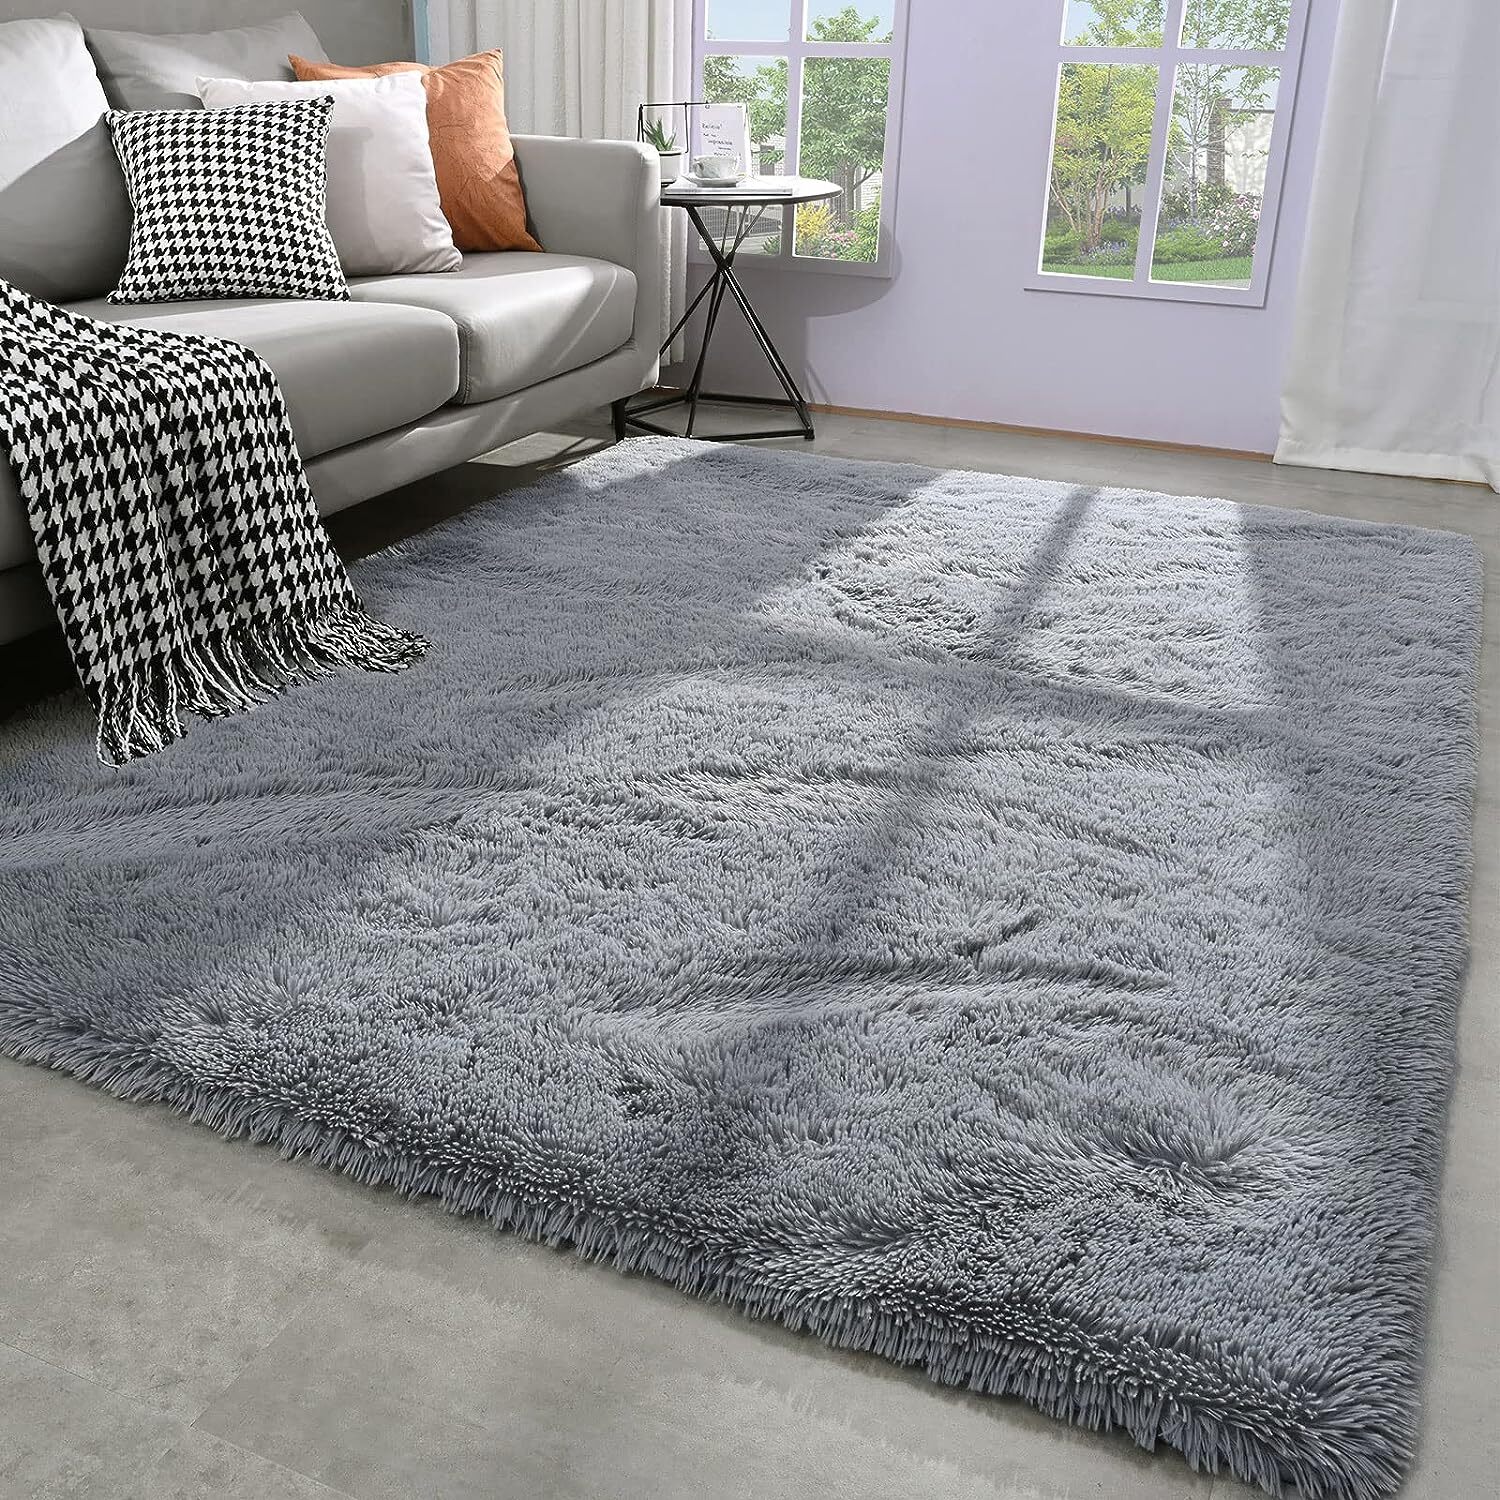 Large Soft Shag Rug Carpet Mat (Grey, 230 x 160)